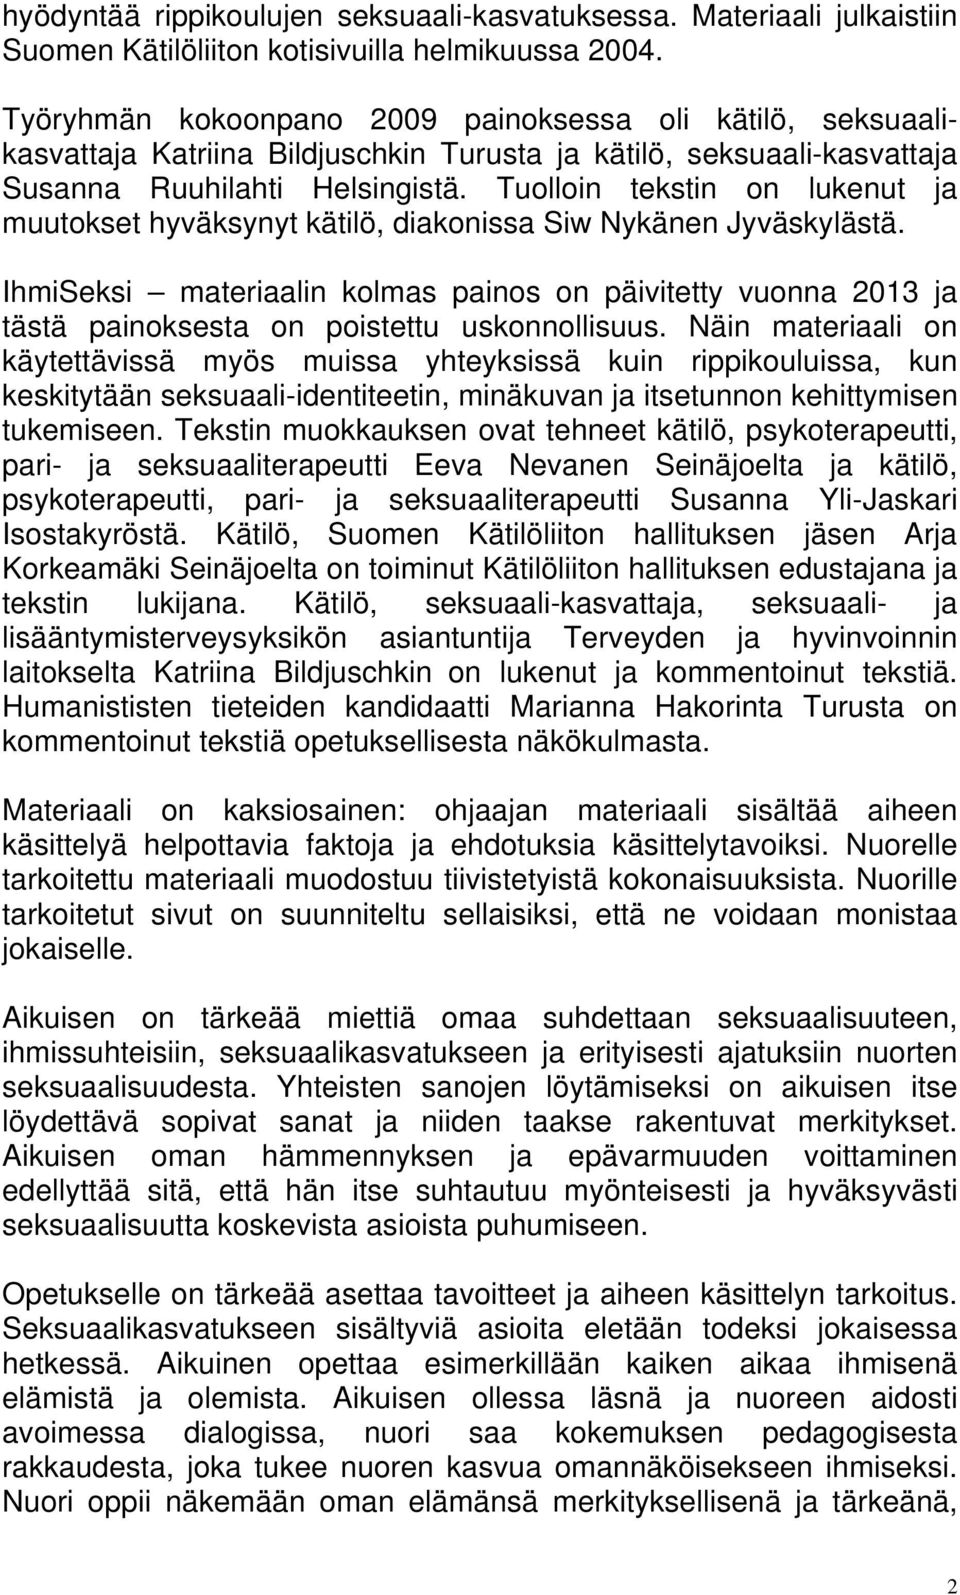 Tuolloin tekstin on lukenut ja muutokset hyväksynyt kätilö, diakonissa Siw Nykänen Jyväskylästä.